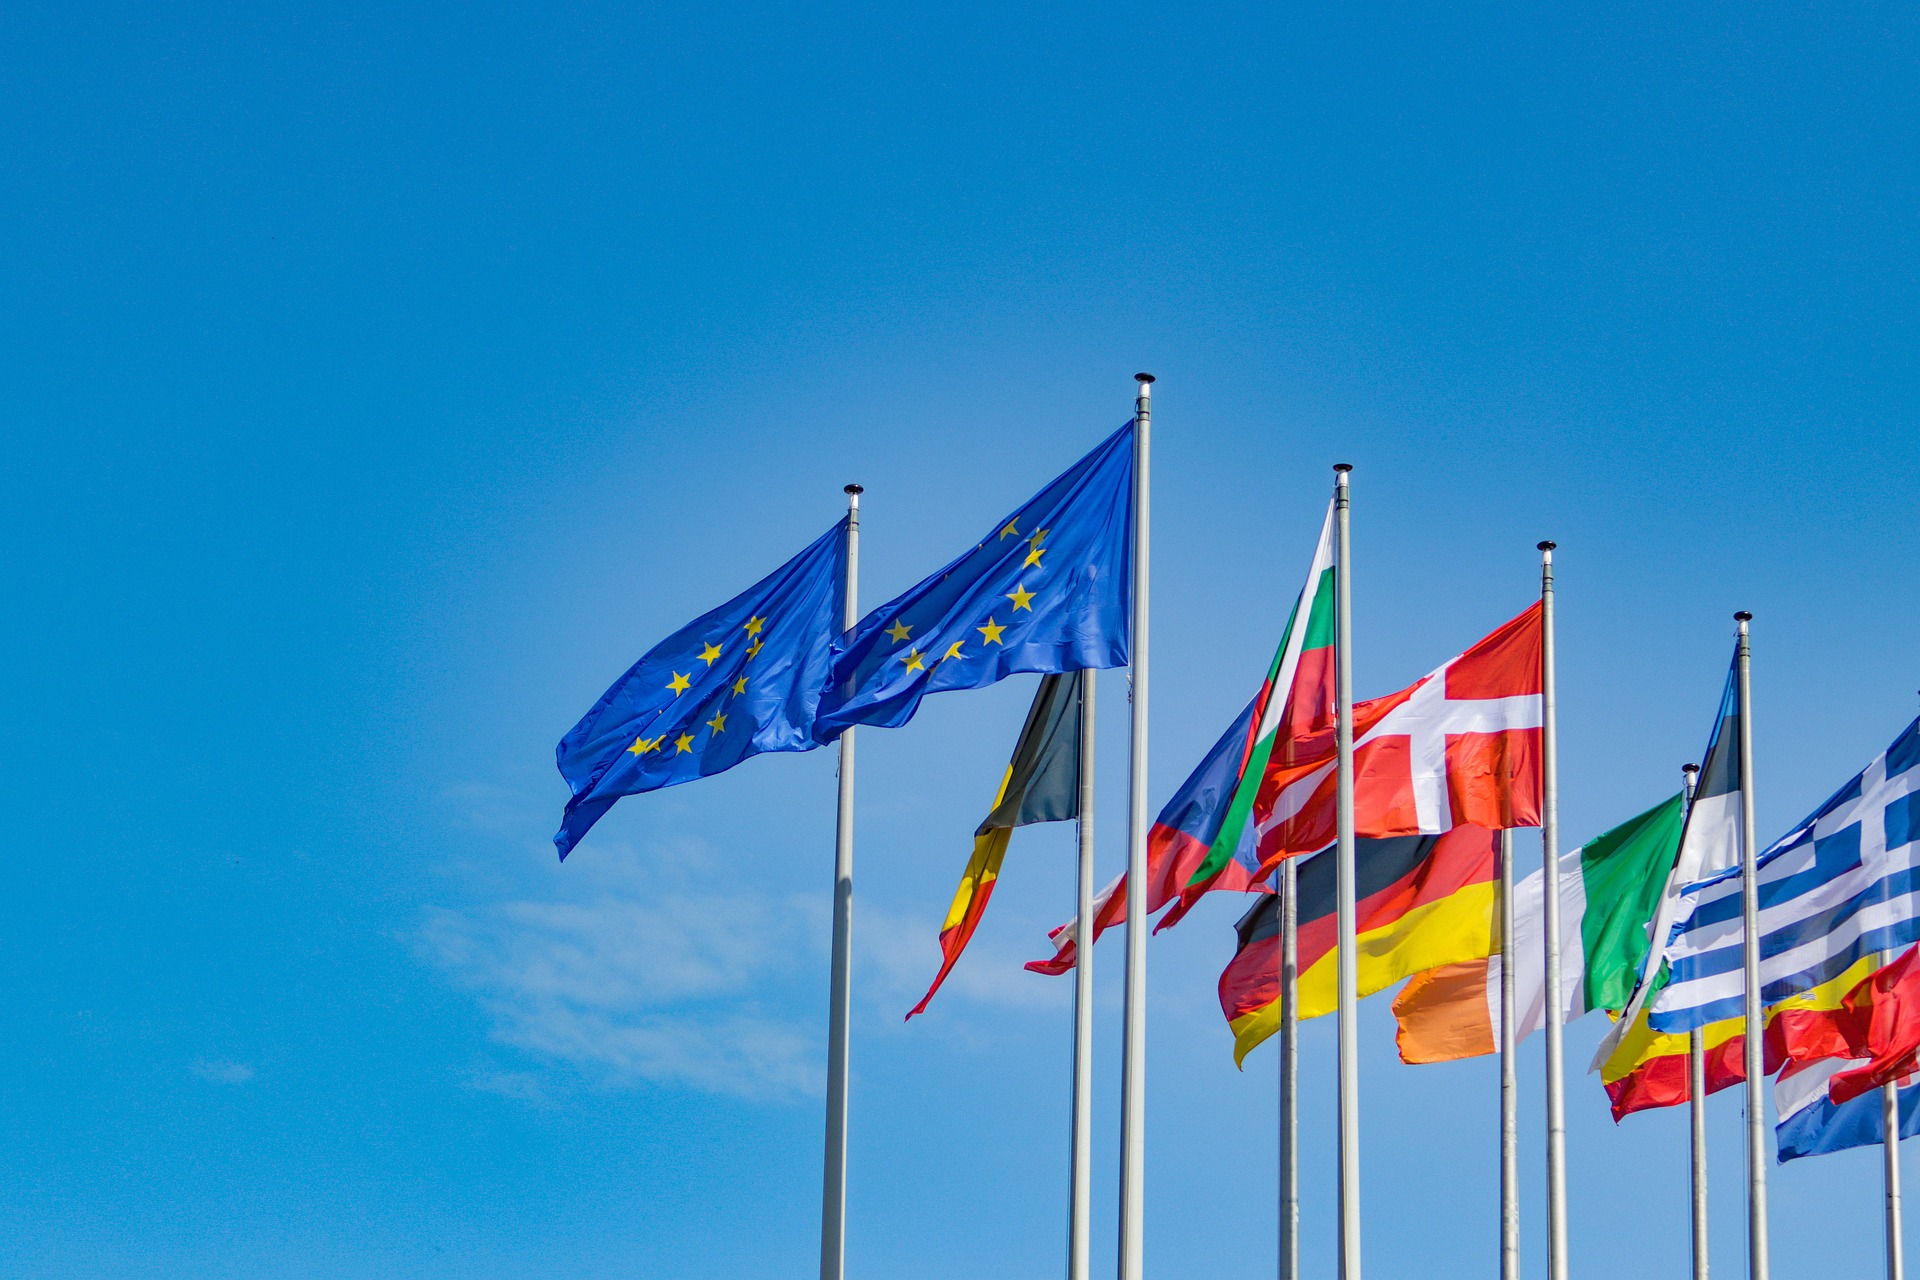 Dos banderas de la Unión Europea al centro acompañadas de banderas de países de Europa ondeando sobre un fondo azul